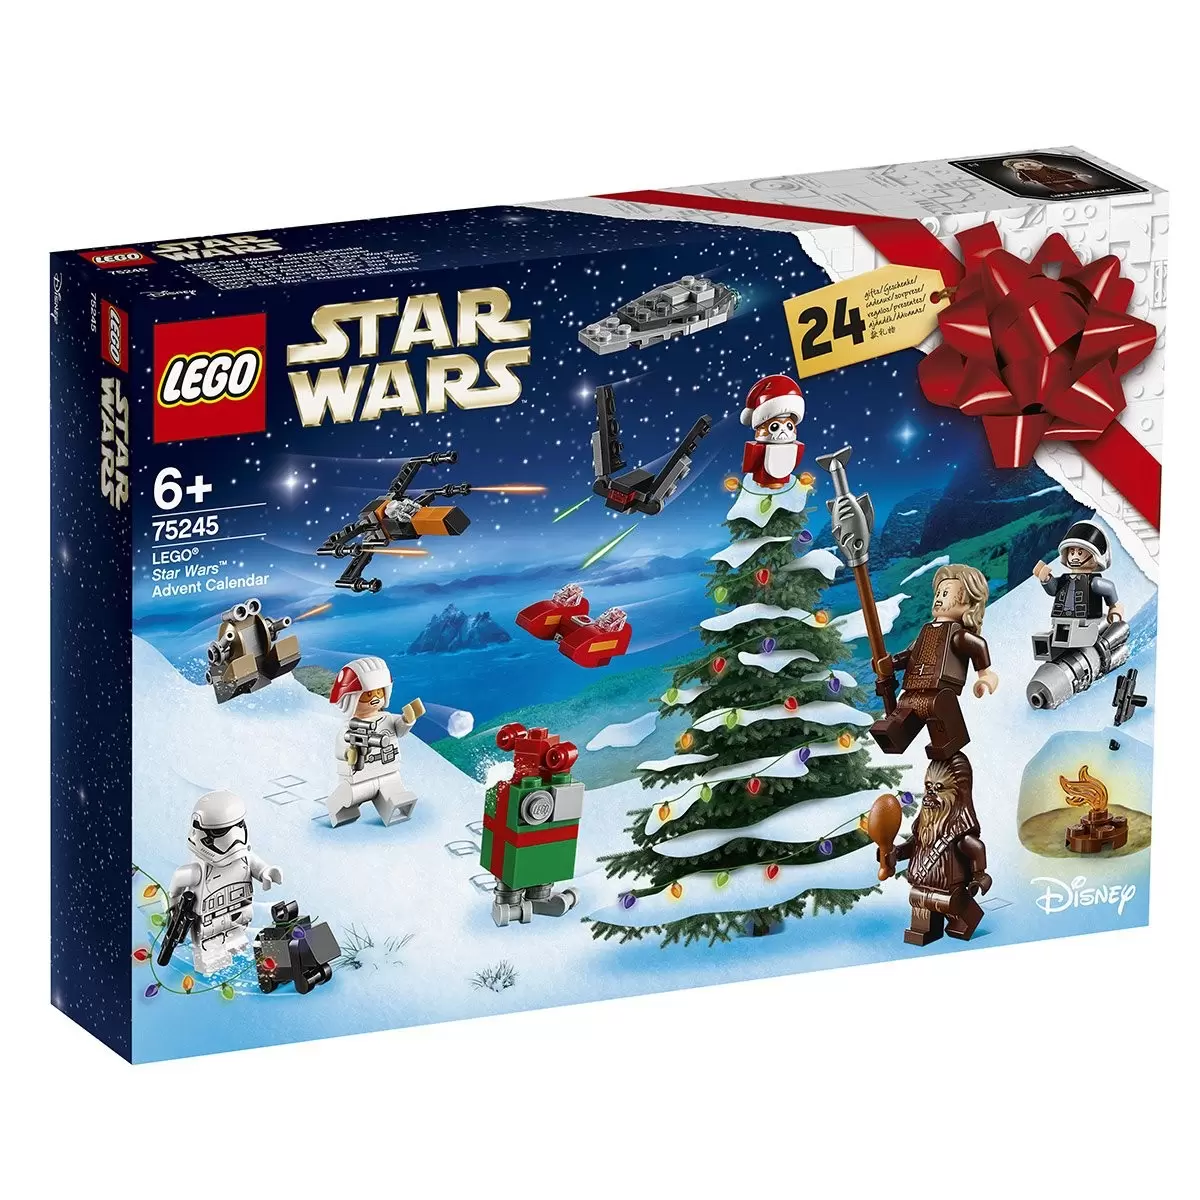 LEGO Star Wars - Advent Calendar 2019